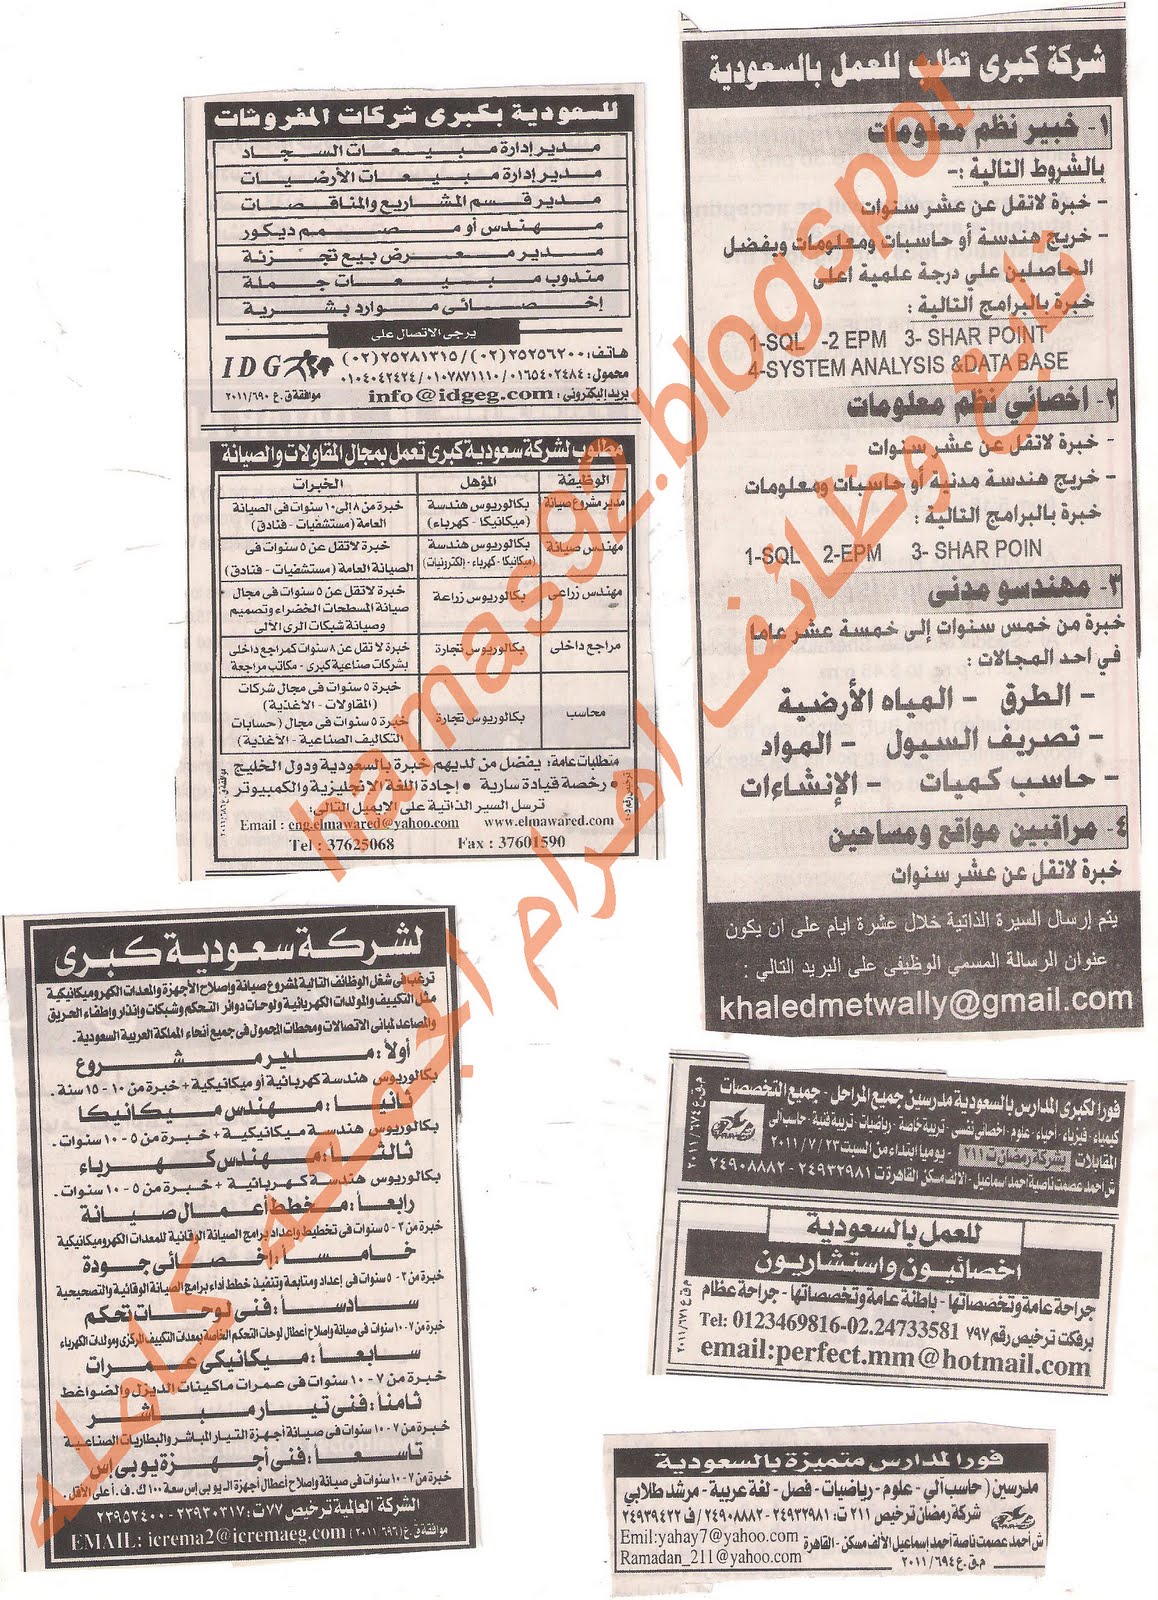 وظائف للمصرين فى السعودية من جريدة الاهرام الاسبوعى الجمعة 22 يوليو 2011 Picture+012